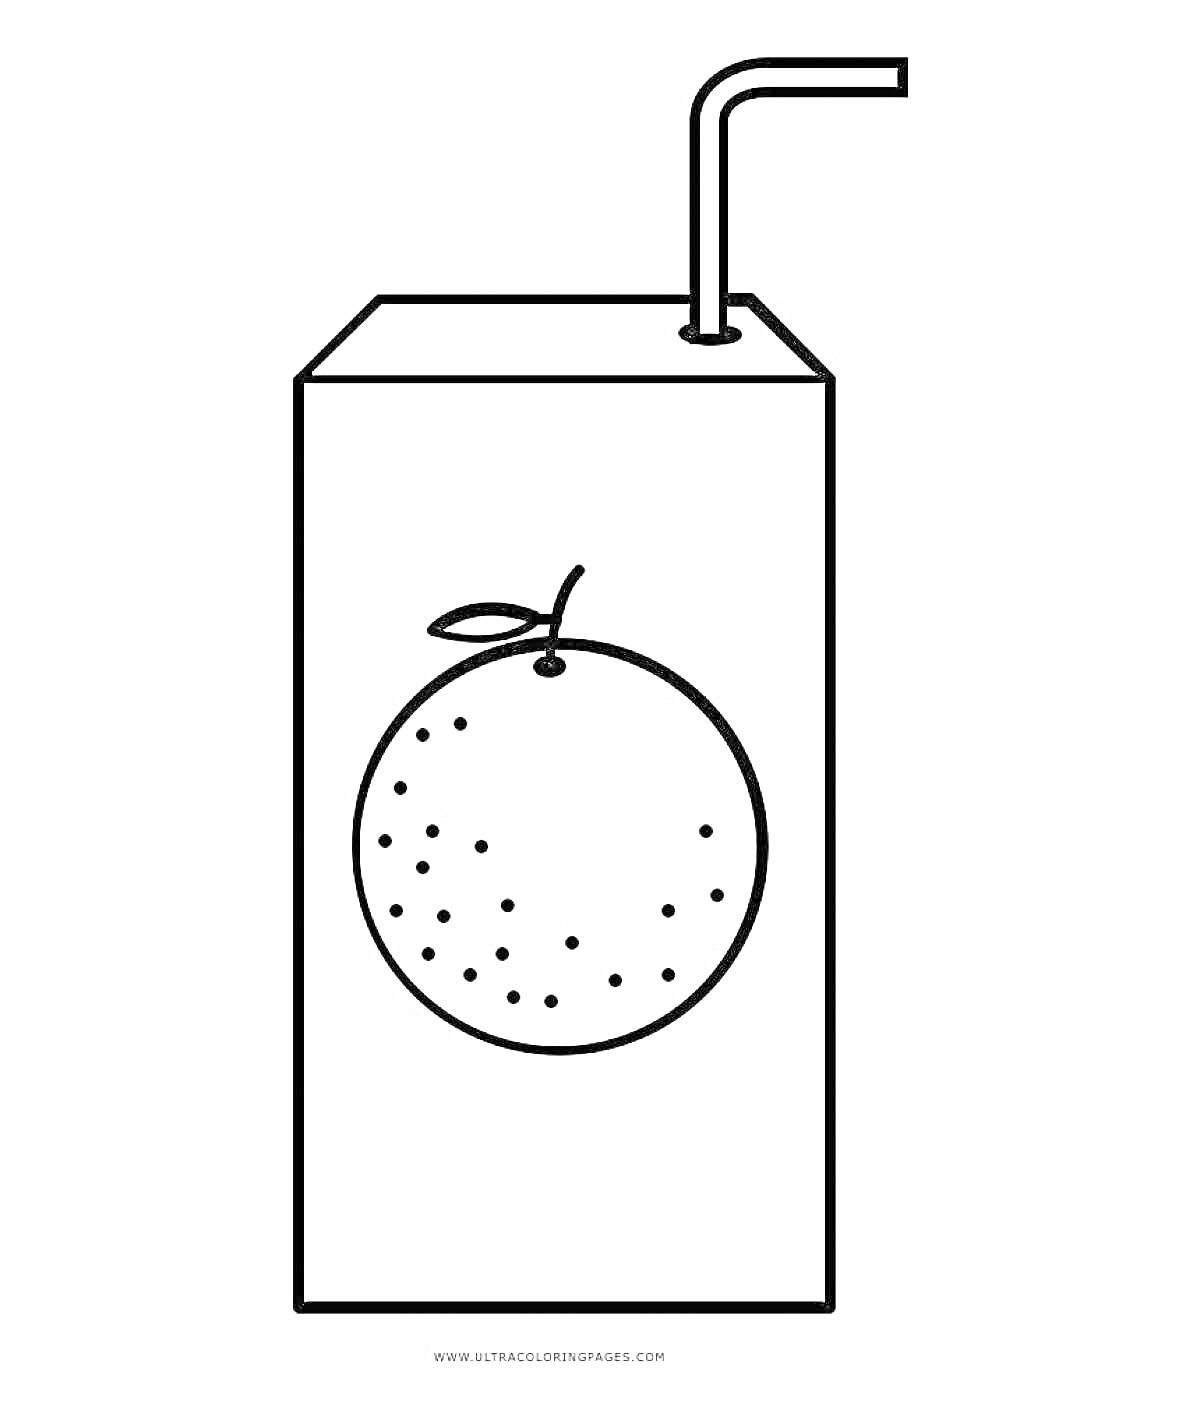 Раскраска Пакетированный сок с изображением апельсина и трубочкой